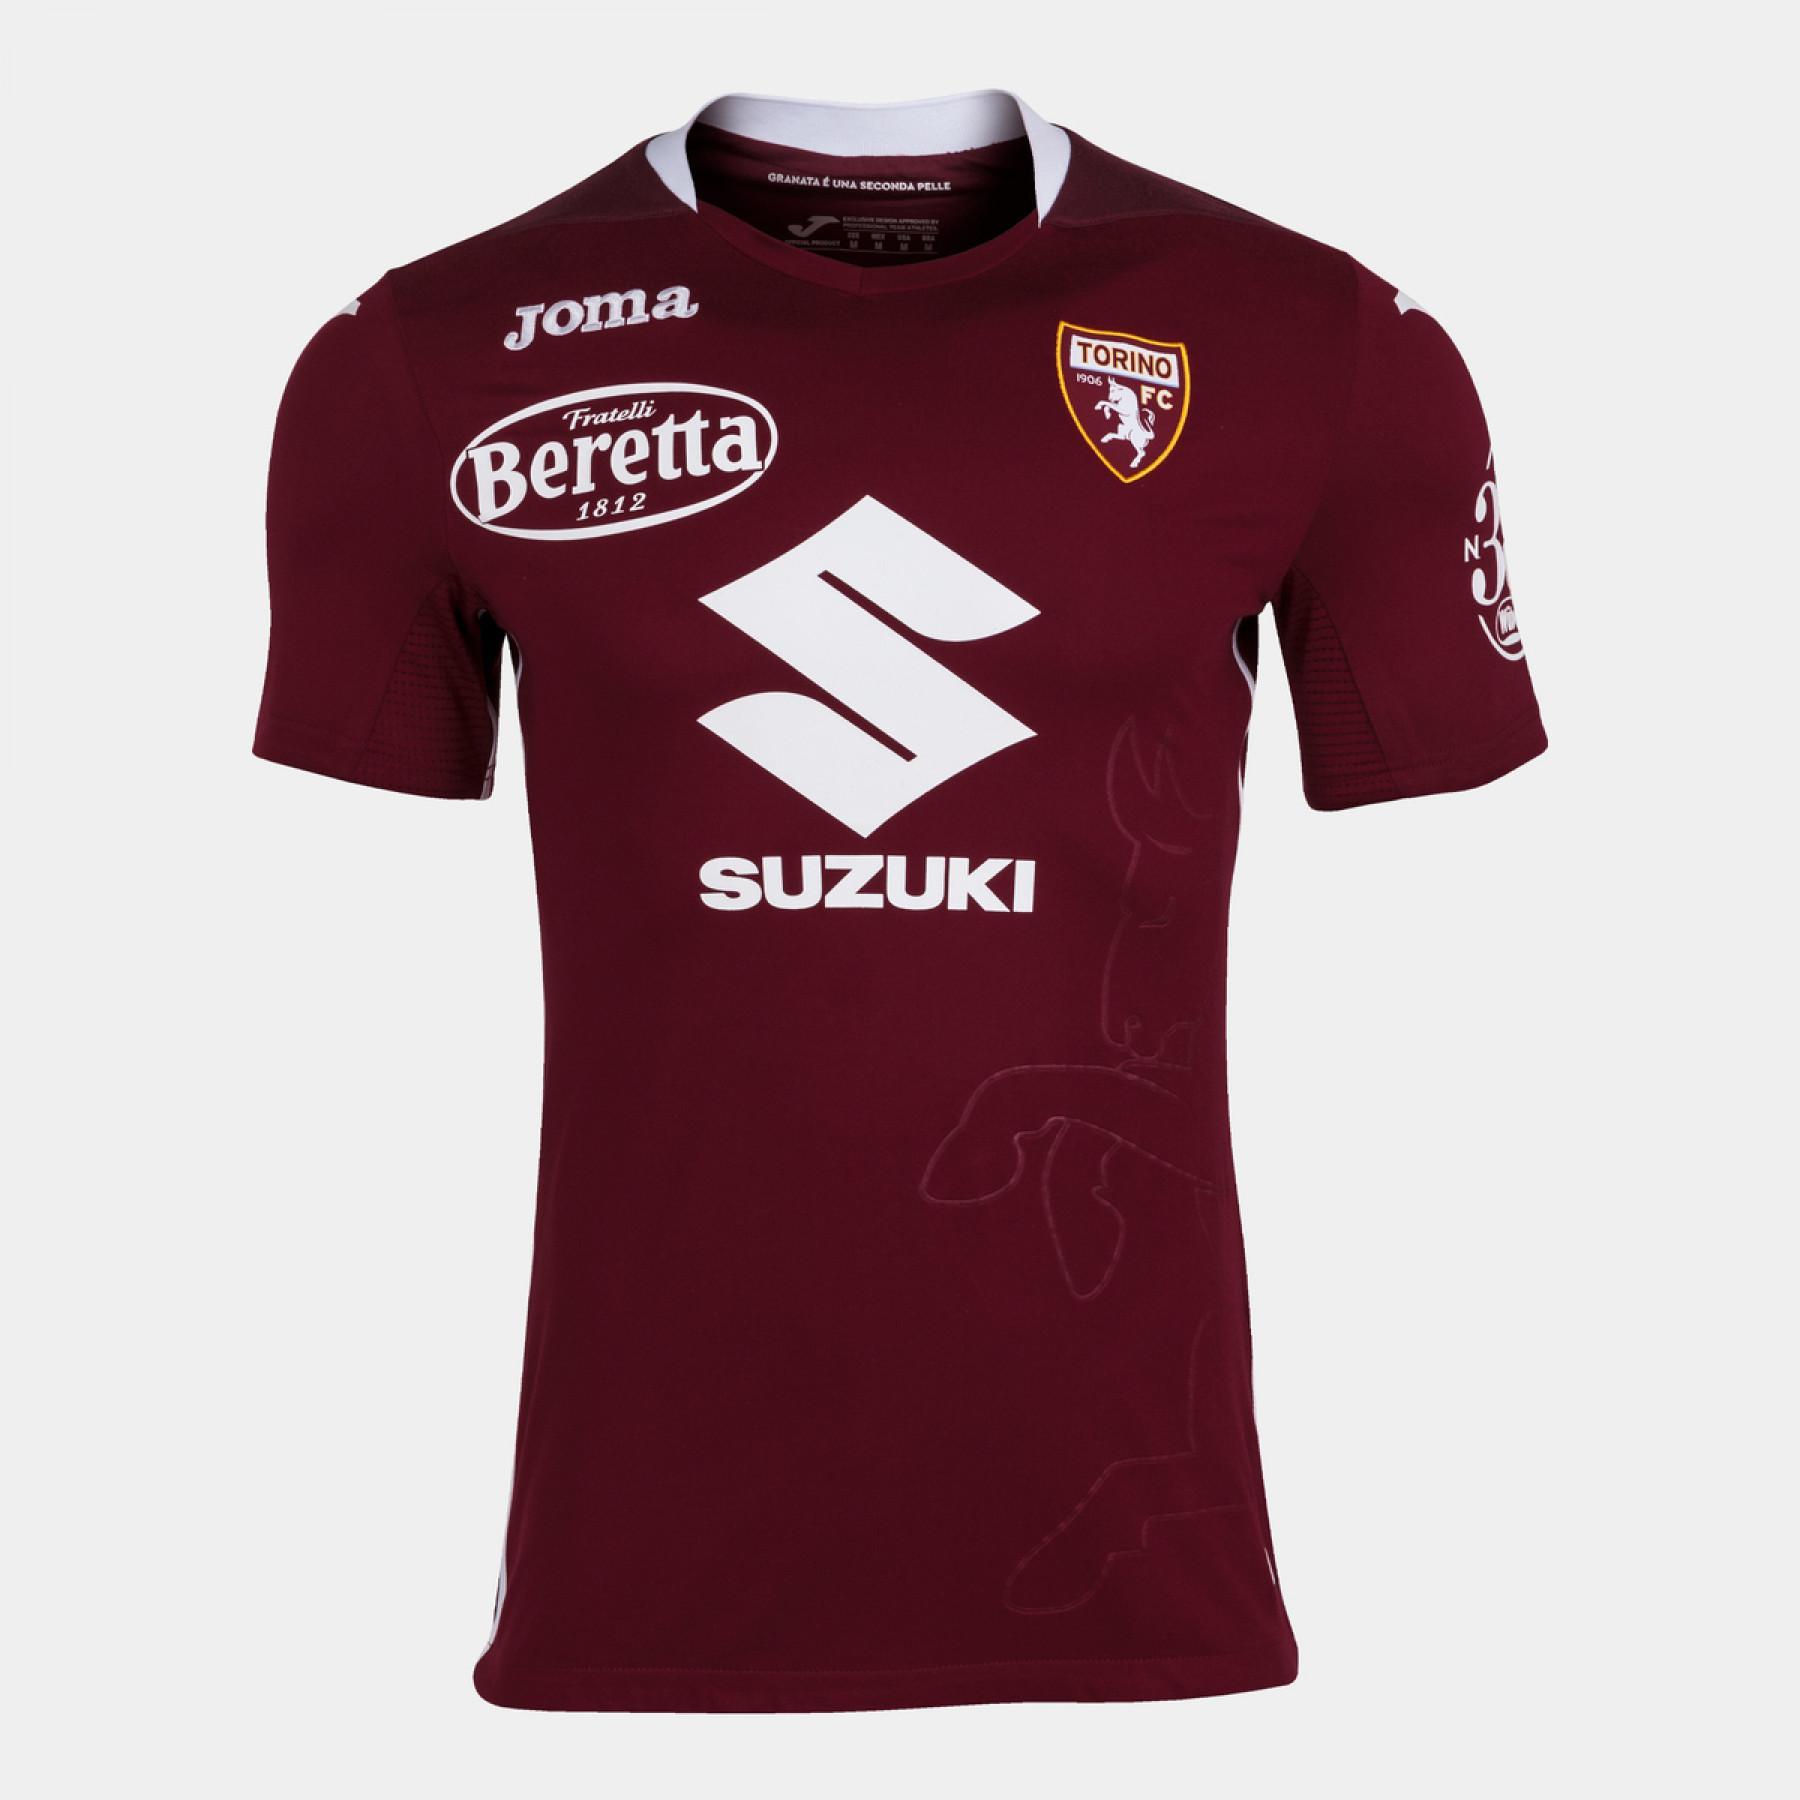 Maillot Domicile authentique Torino FC 2020/21 avec sponsors